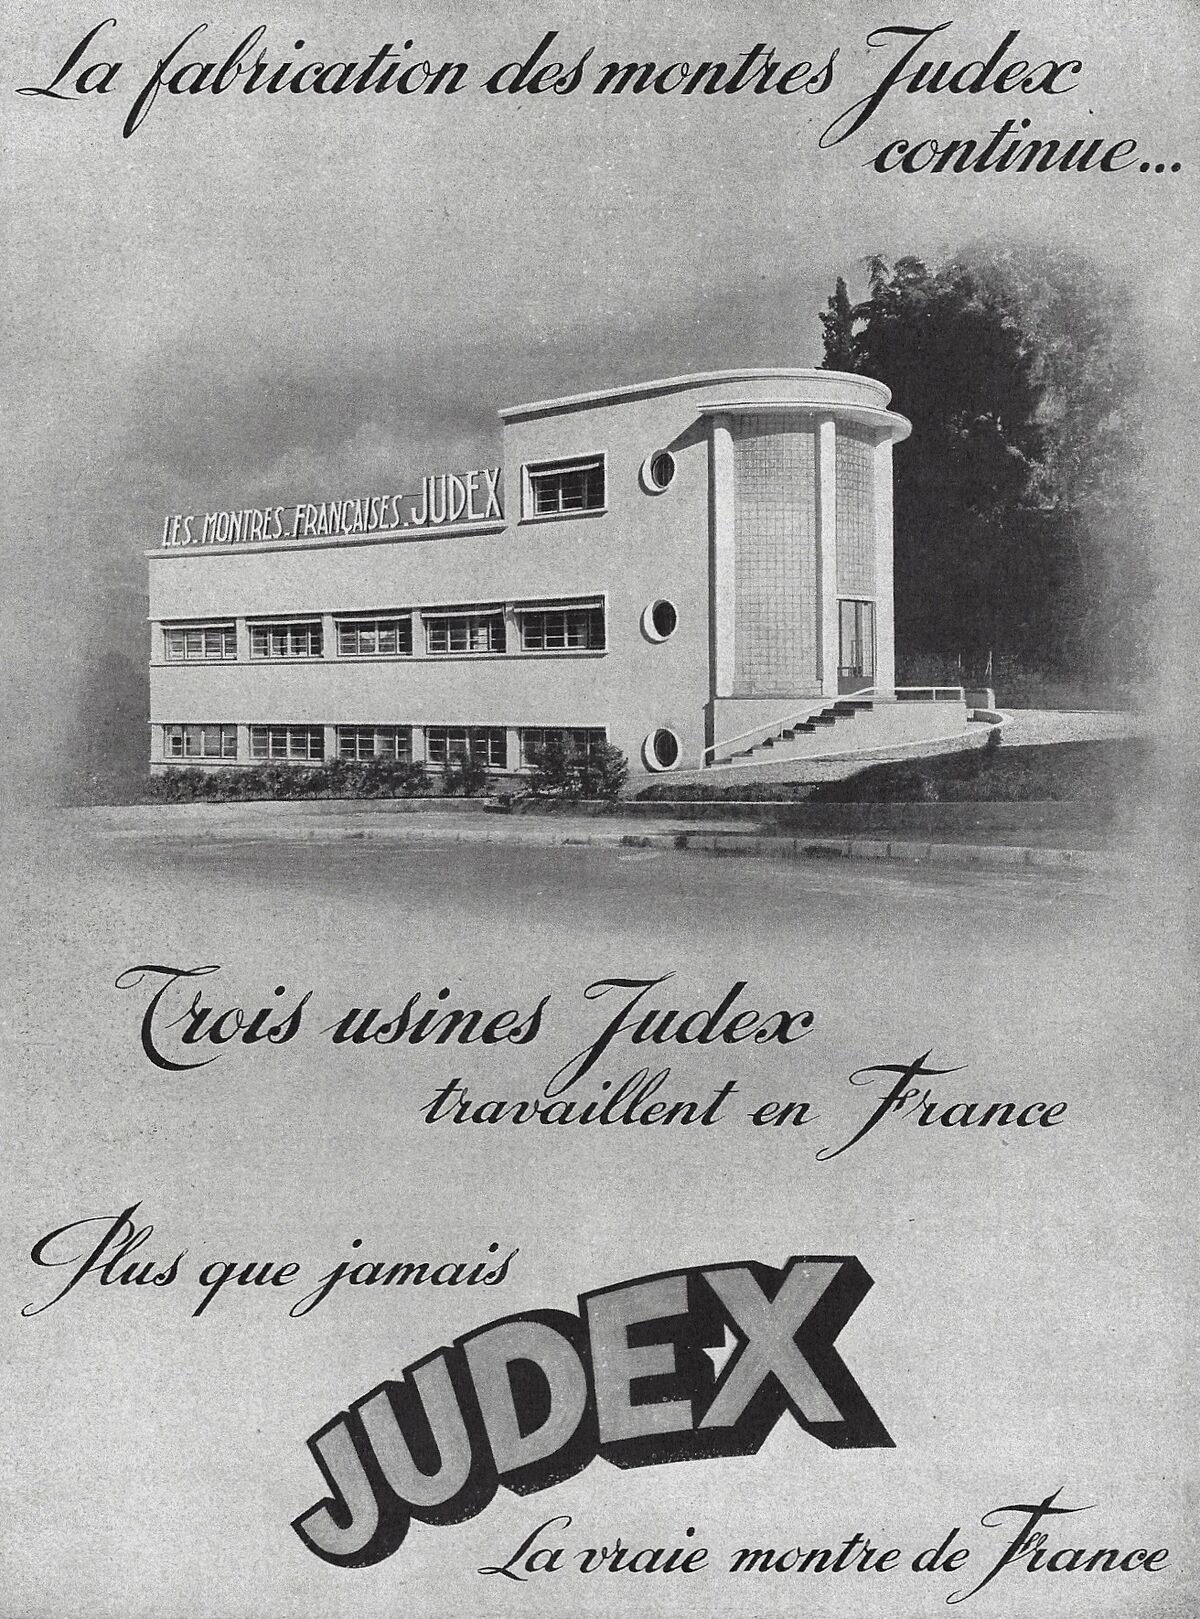 Publicités de 1940